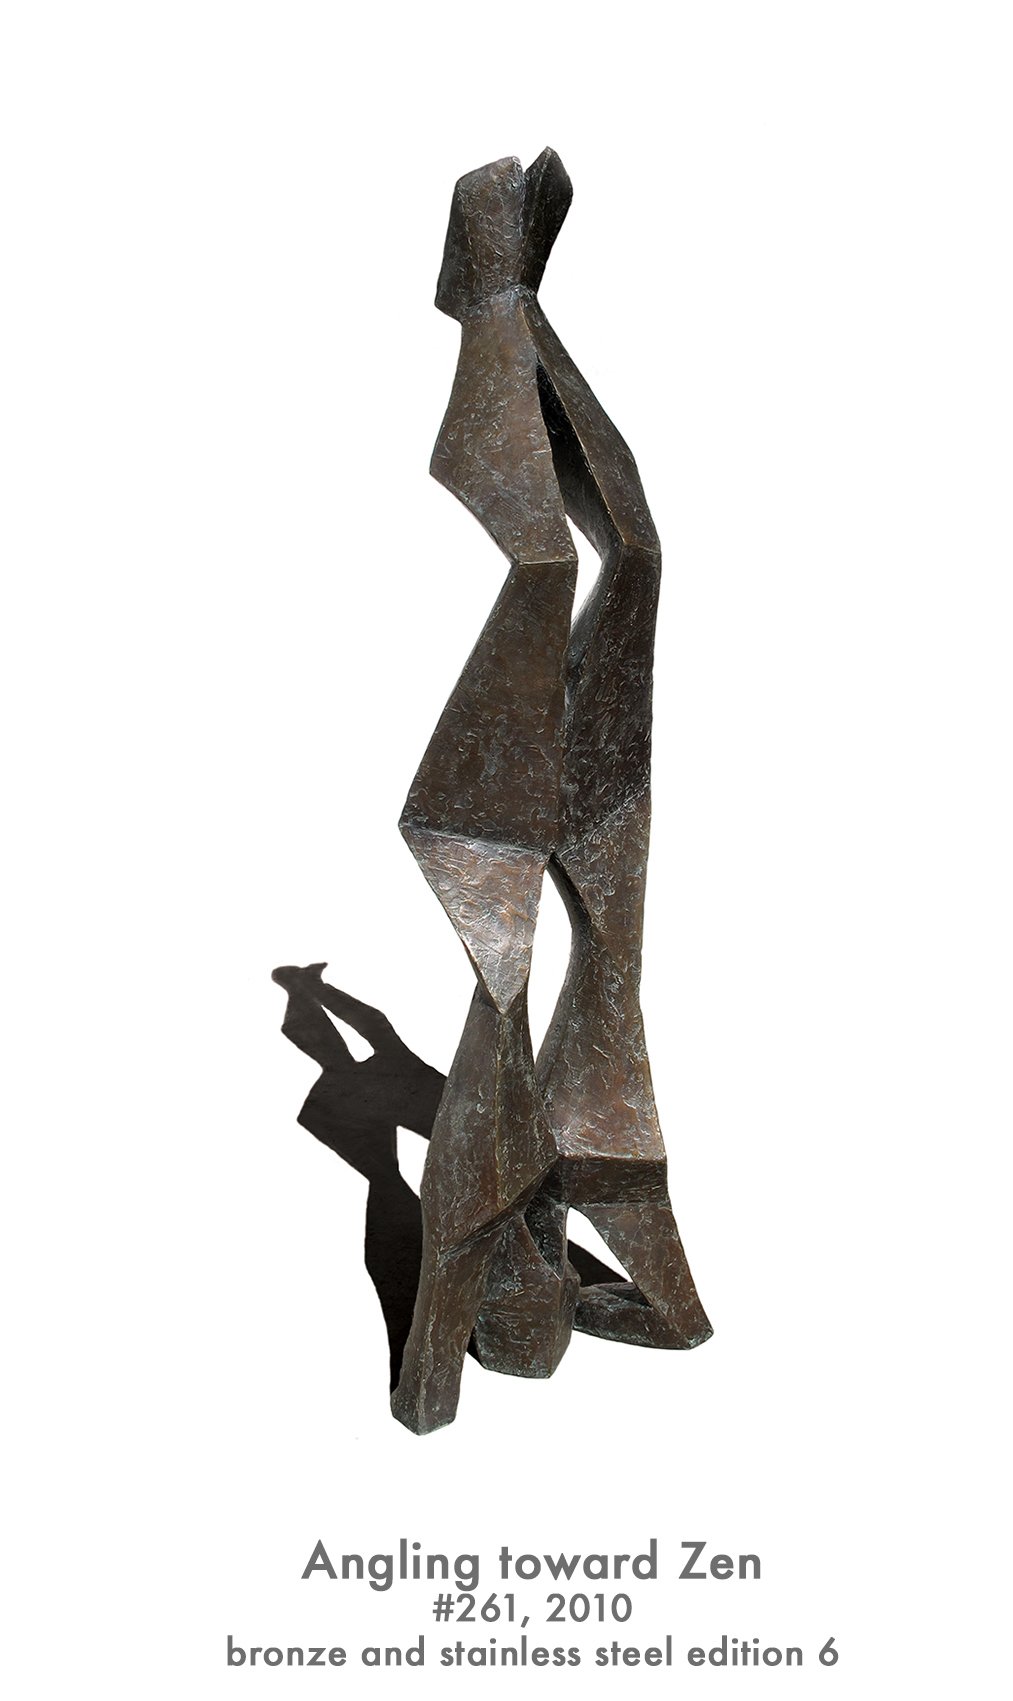 Angling Toward Zen, 2010, bronze & stainless steel, #261